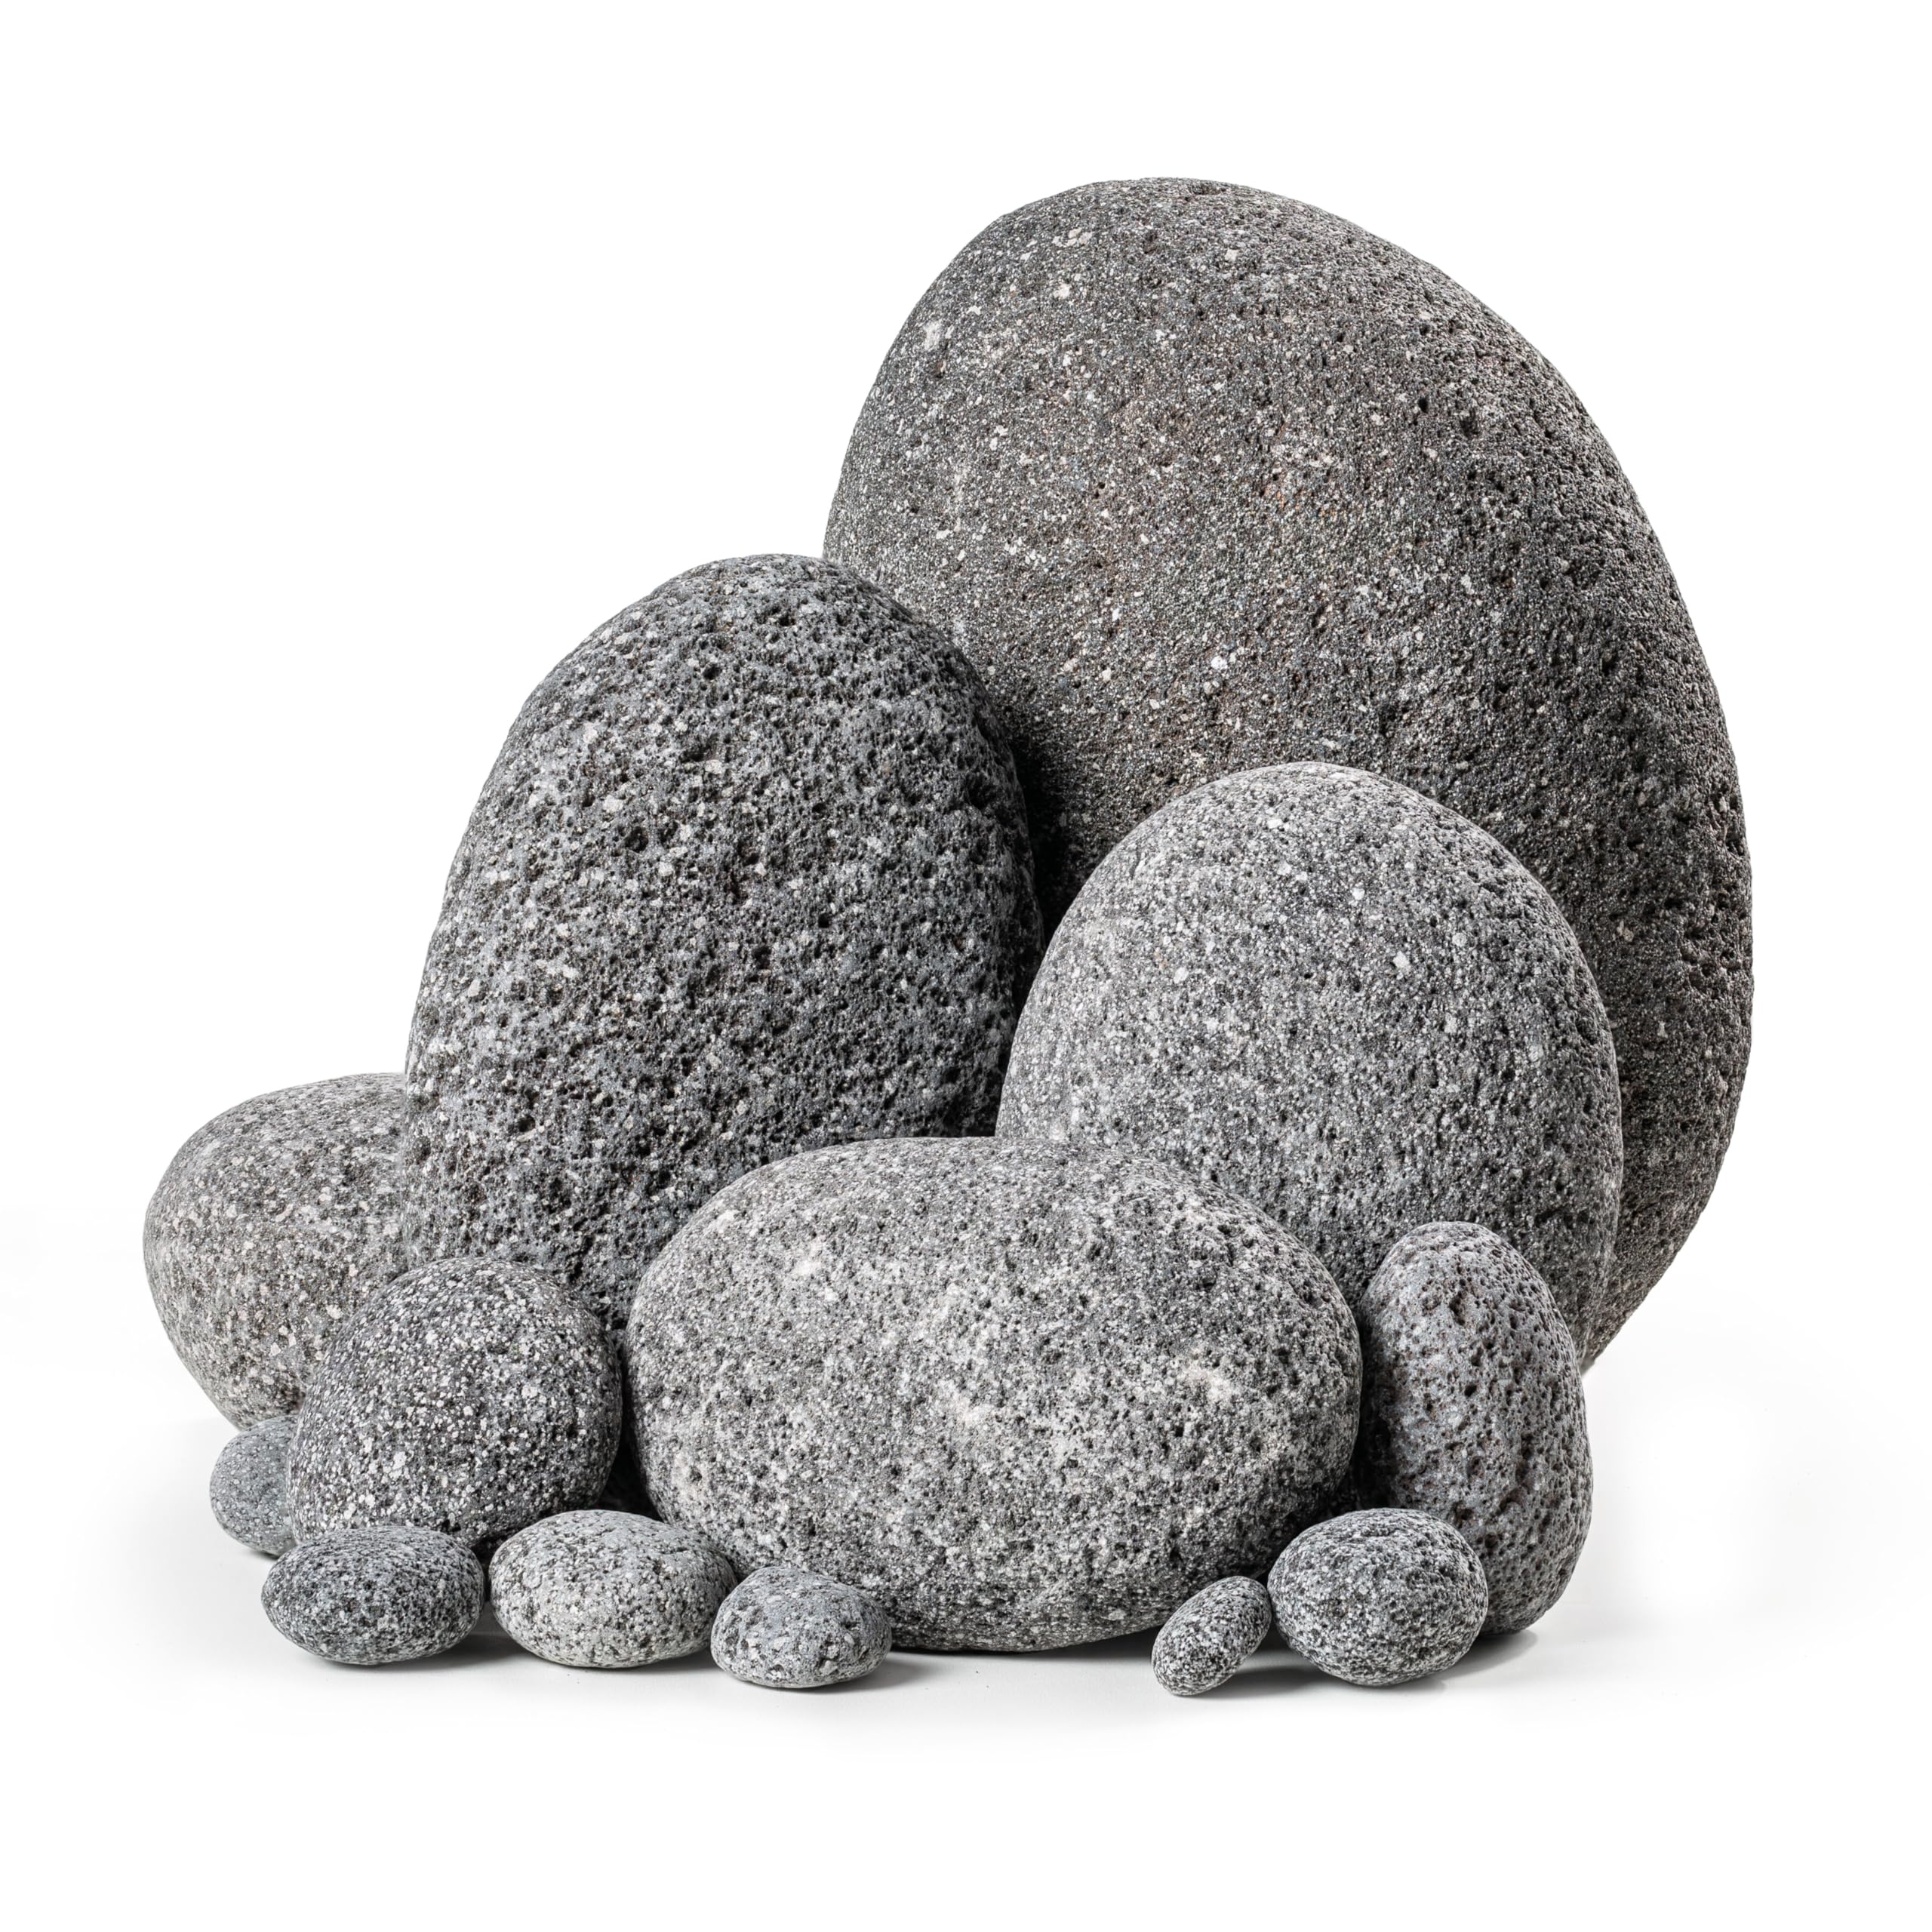 ARKA mySCAPE-Lava Pebbles - 20kg / 10-300 mm Mix - Lava-Pebbles für eindrucksvolle Aquascapes in Süßwasseraquarien, unterstützen die natürliche Filtration und bieten kreativen Gestaltungsspielraum.